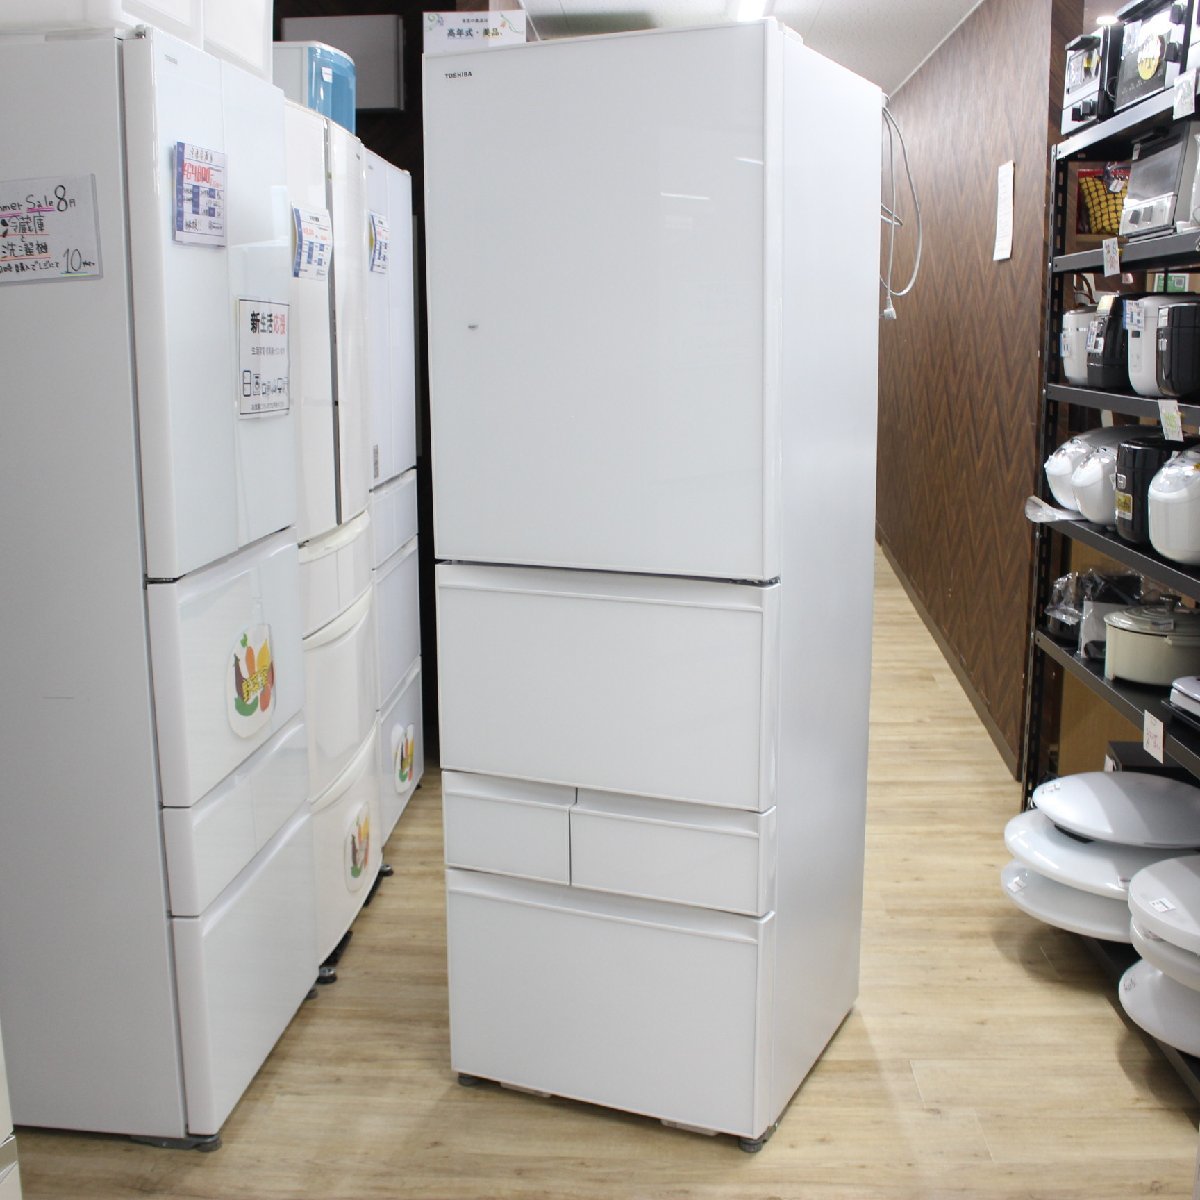 横浜市旭区にて 東芝 冷蔵庫 GR-P41GXV 2019年製 を出張買取させて頂きました。